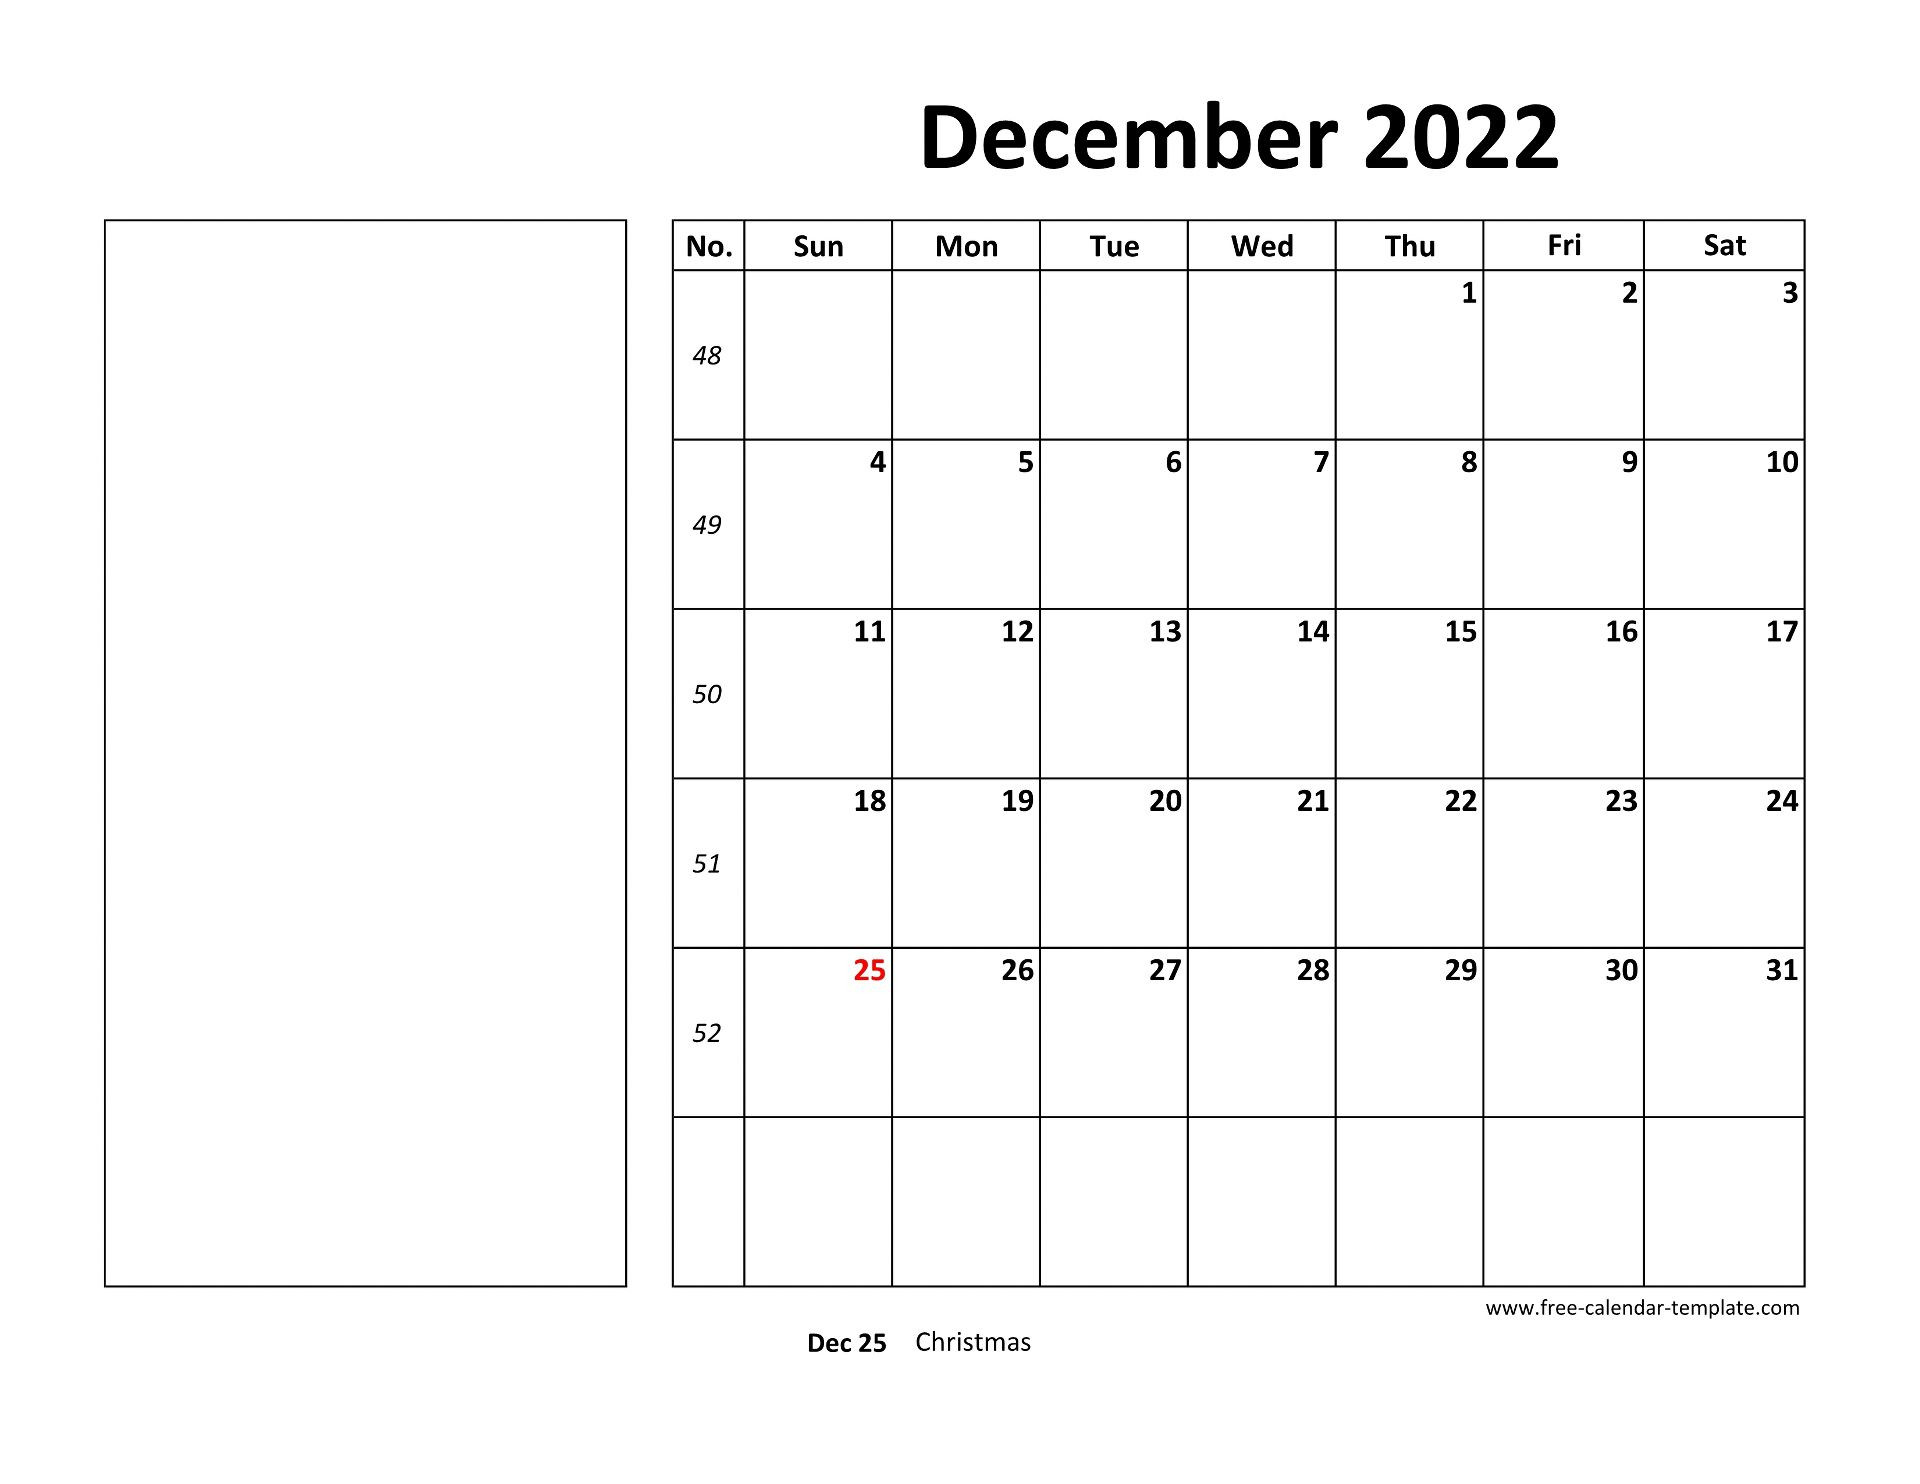 December 2022 Free Calendar Tempplate | Free-Calendar  December 2022 Calendar Template